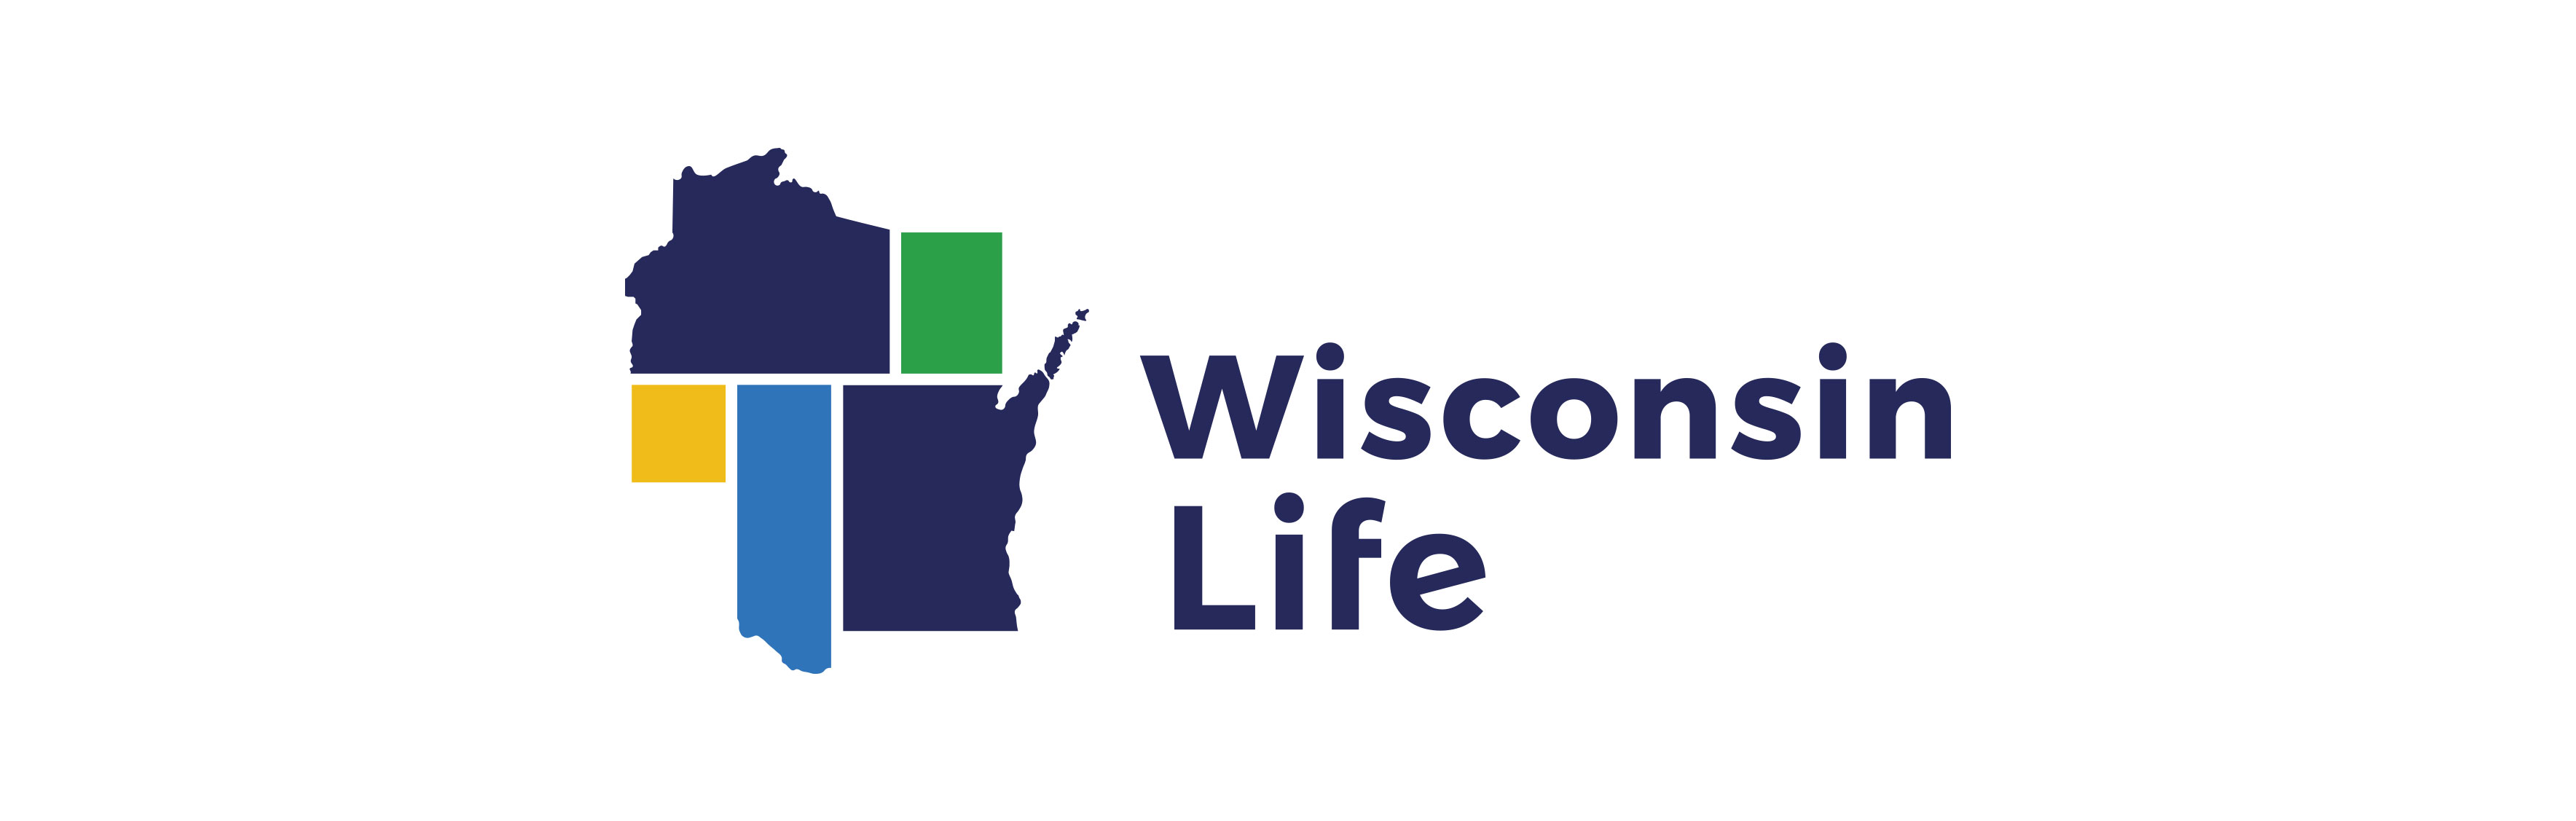 Wisconsin Life logo